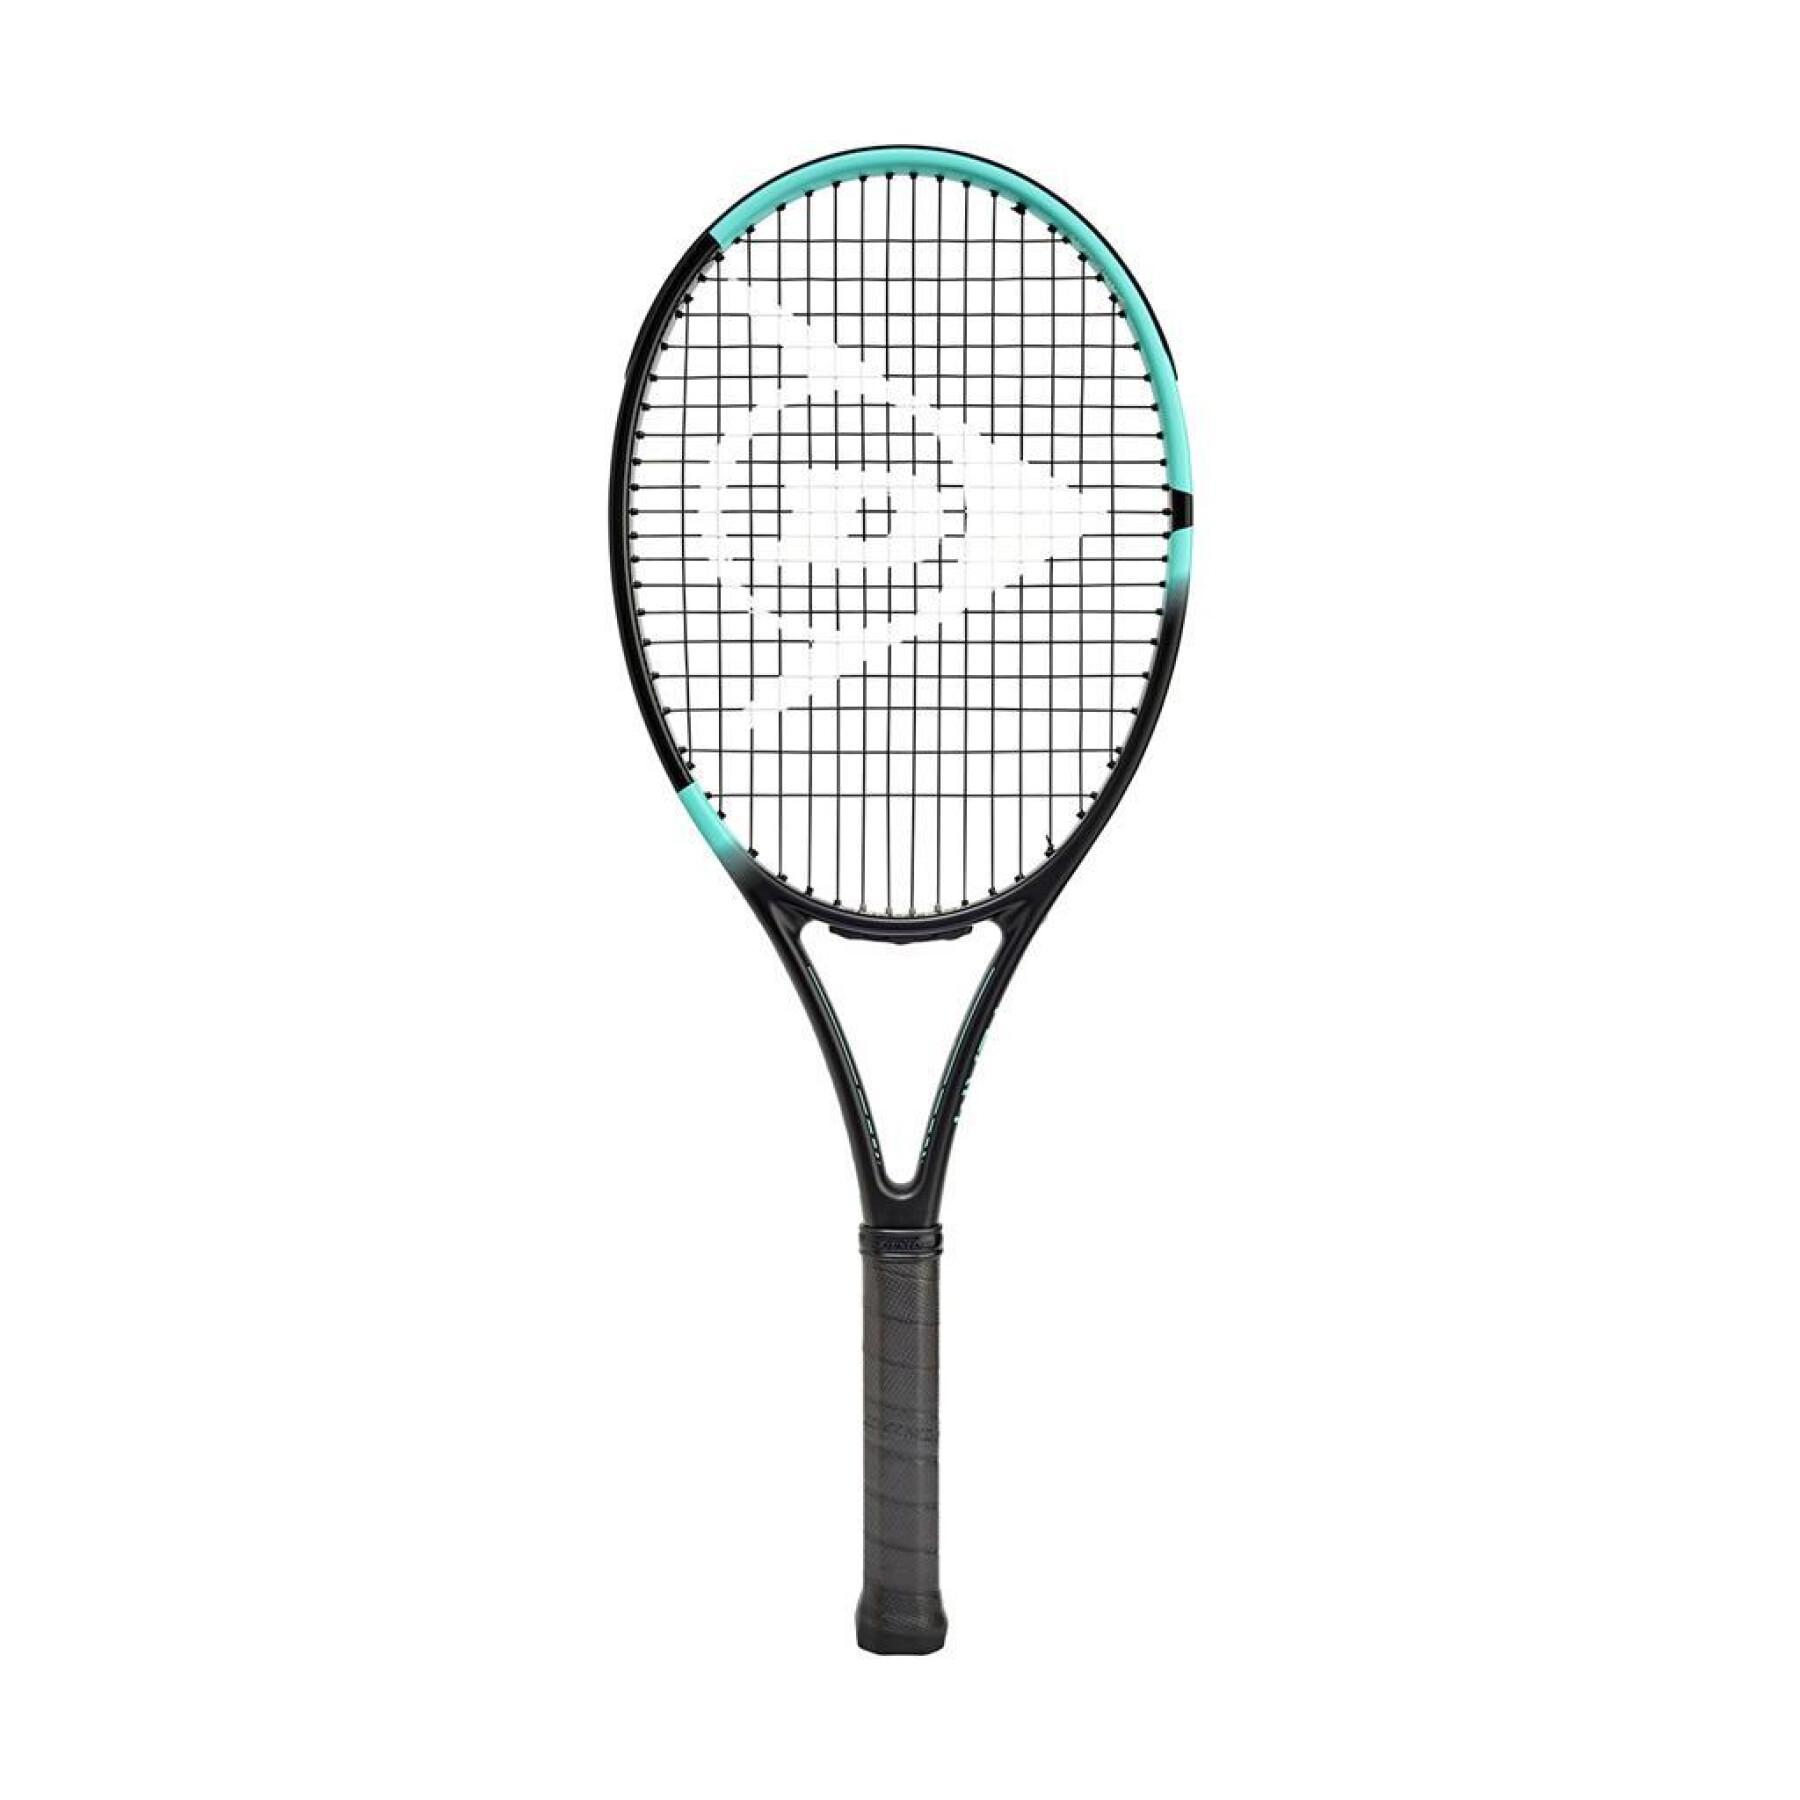 Tennis racket Dunlop Team 260 G1